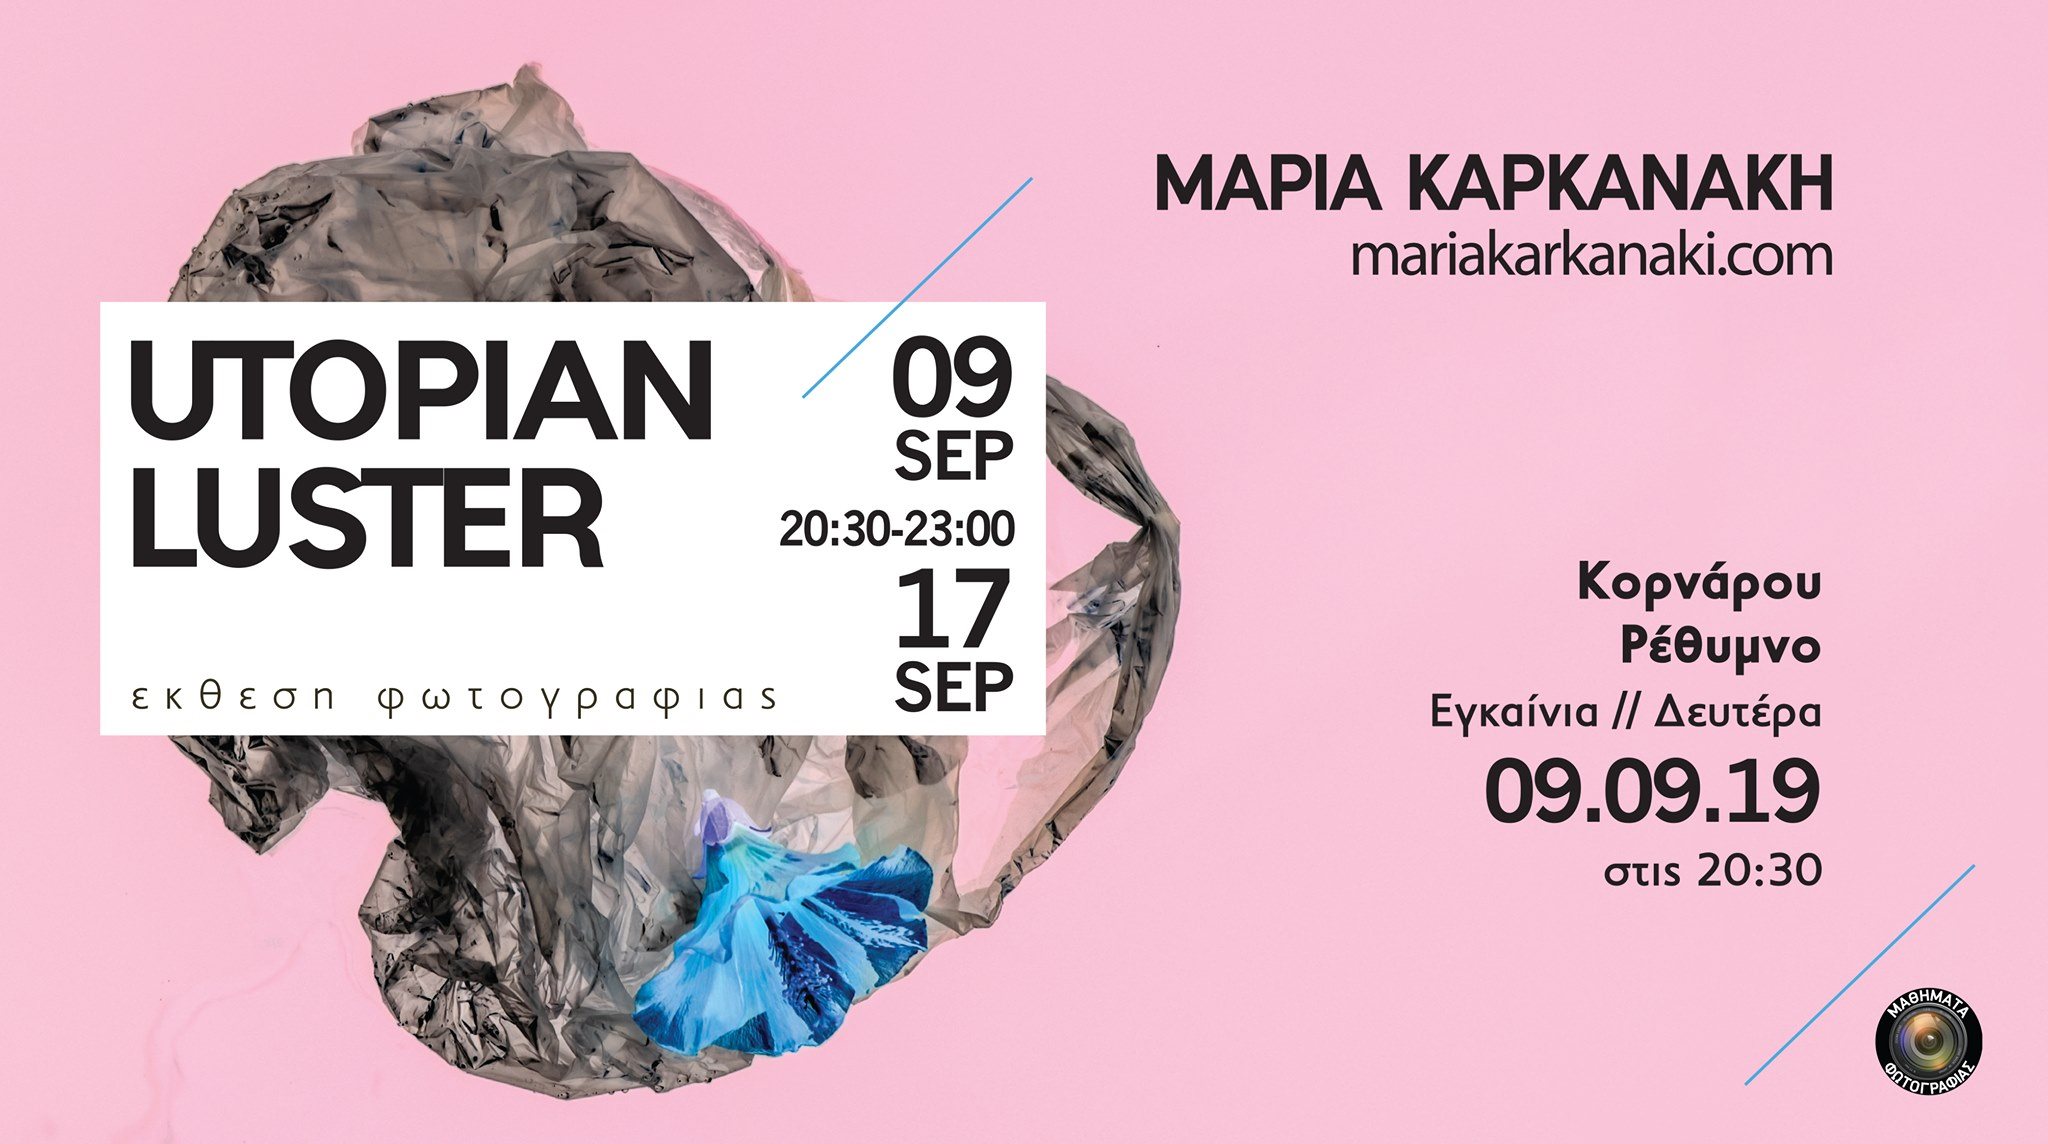 Στις 9 Σεπτεμβρίου τα εγκαίνια της έκθεσης “Utopian Luster” στο Ρέθυμνο